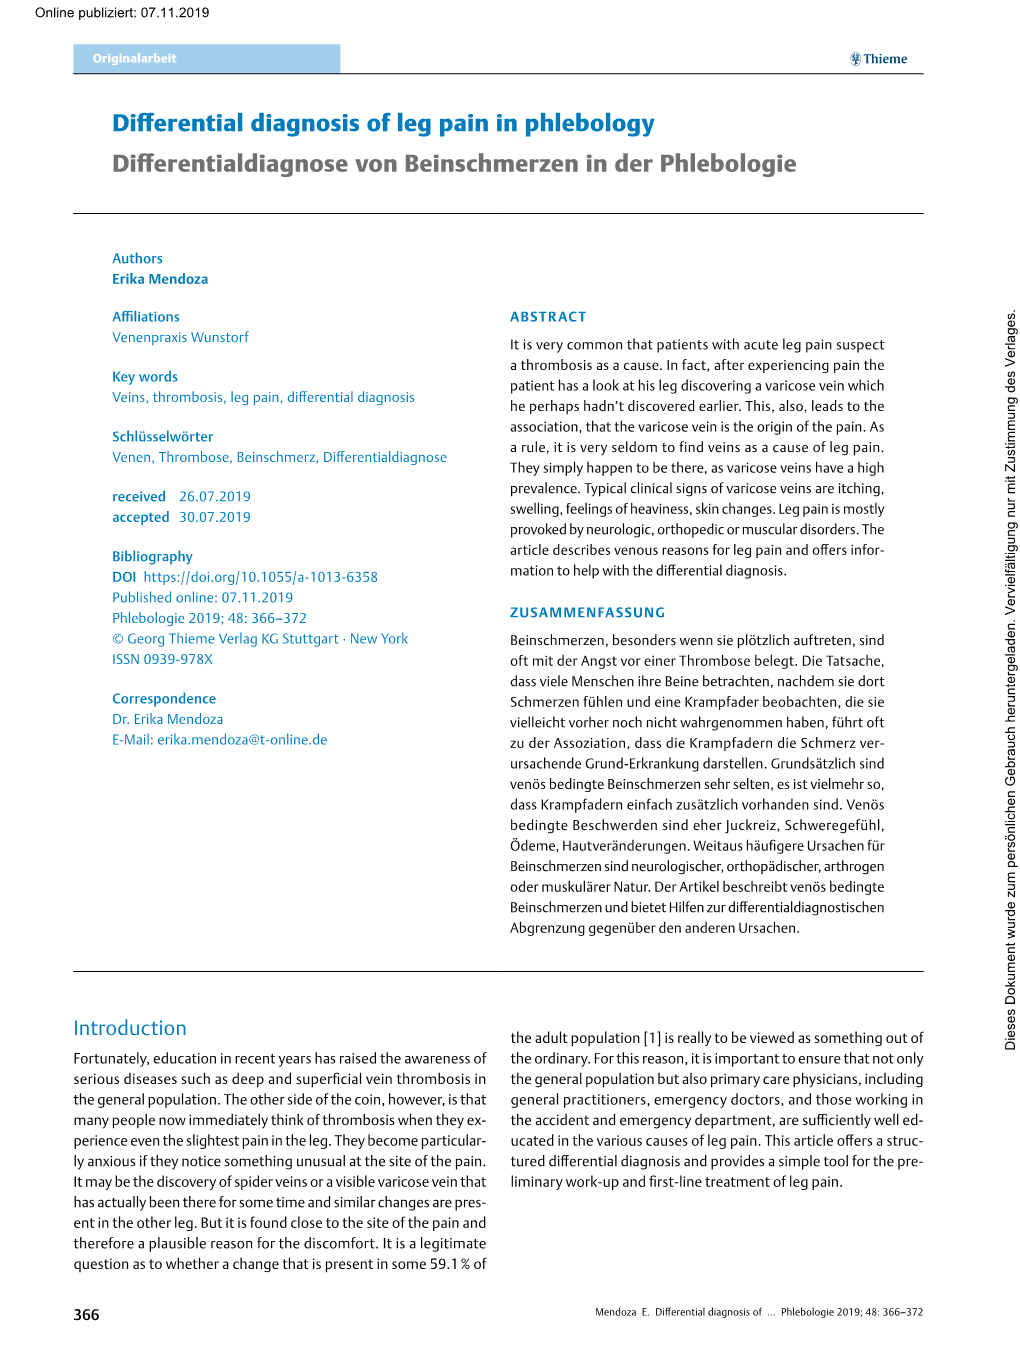 Differential Diagnosis of Leg Pain in Phlebology Differentialdiagnose Von Beinschmerzen in Der Phlebologie